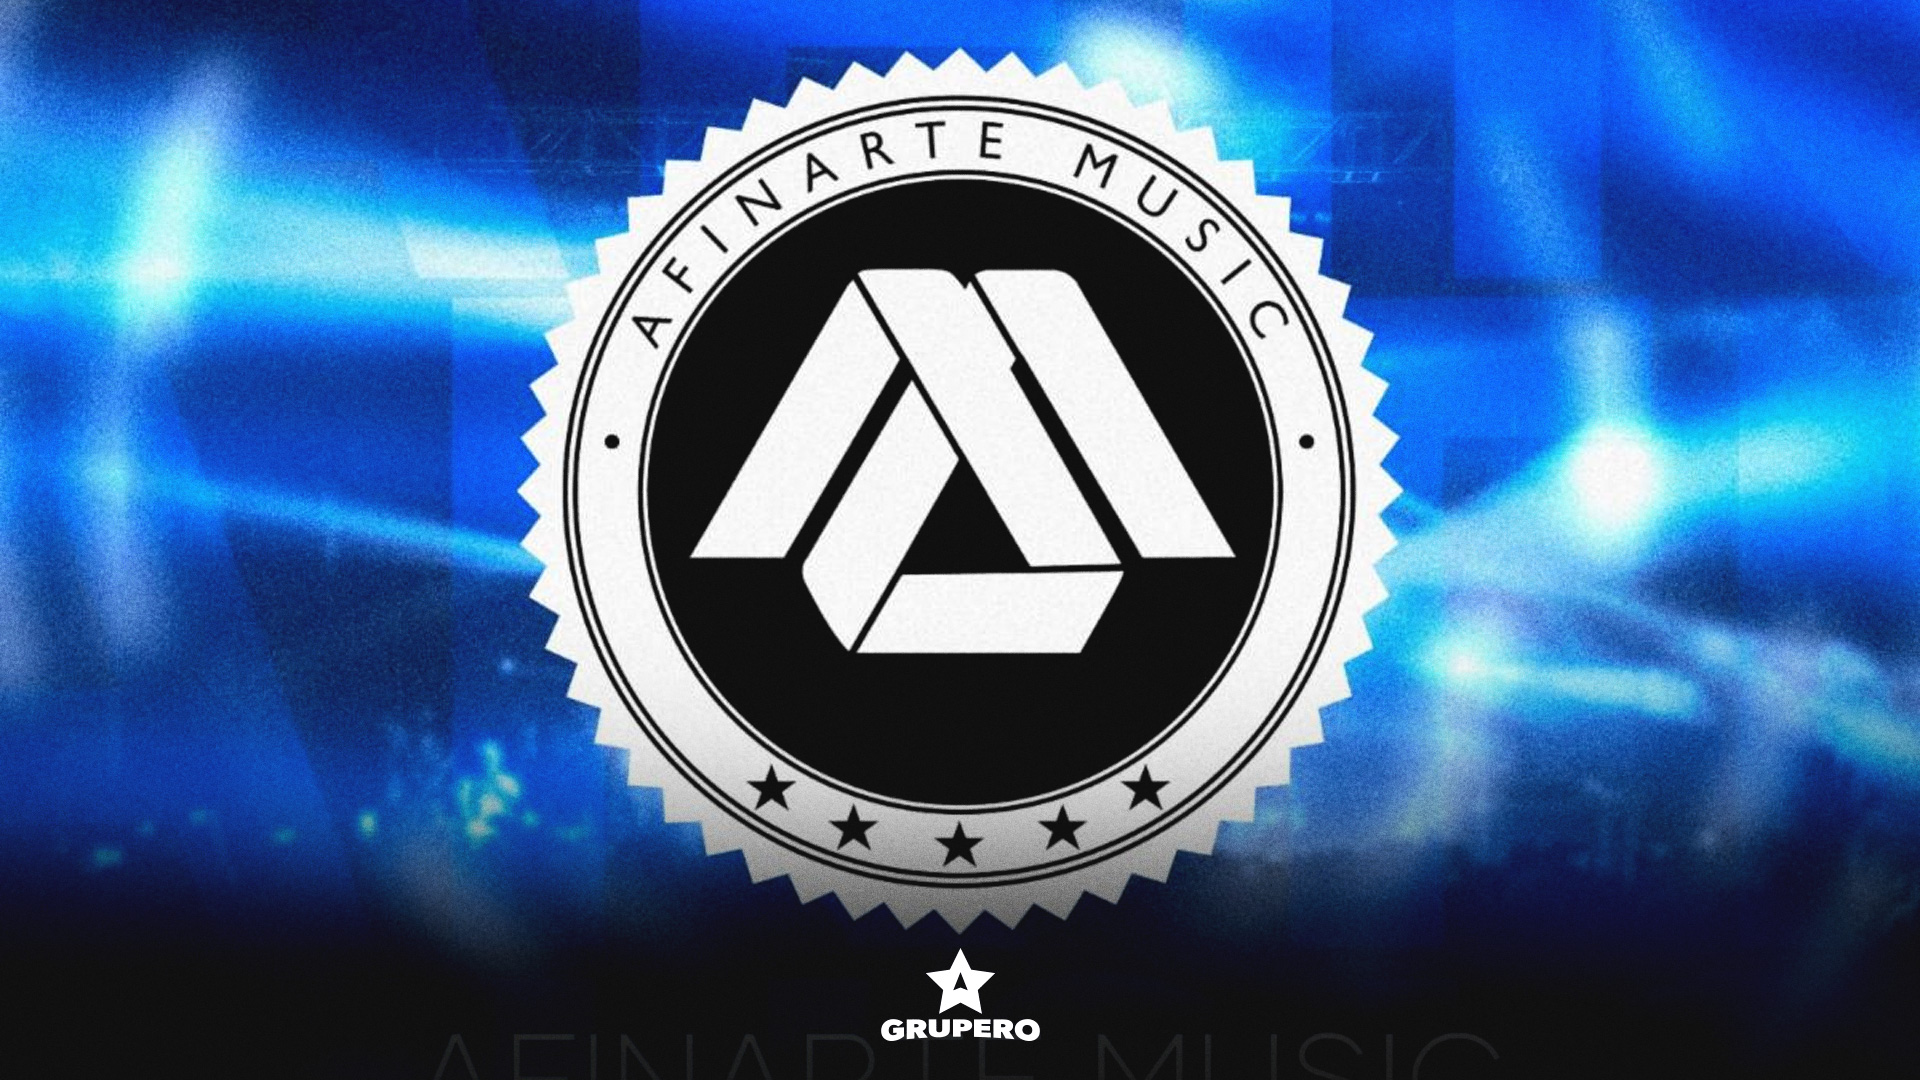 AfinArte Music finalista en los Premios Billboard de la Música Latina